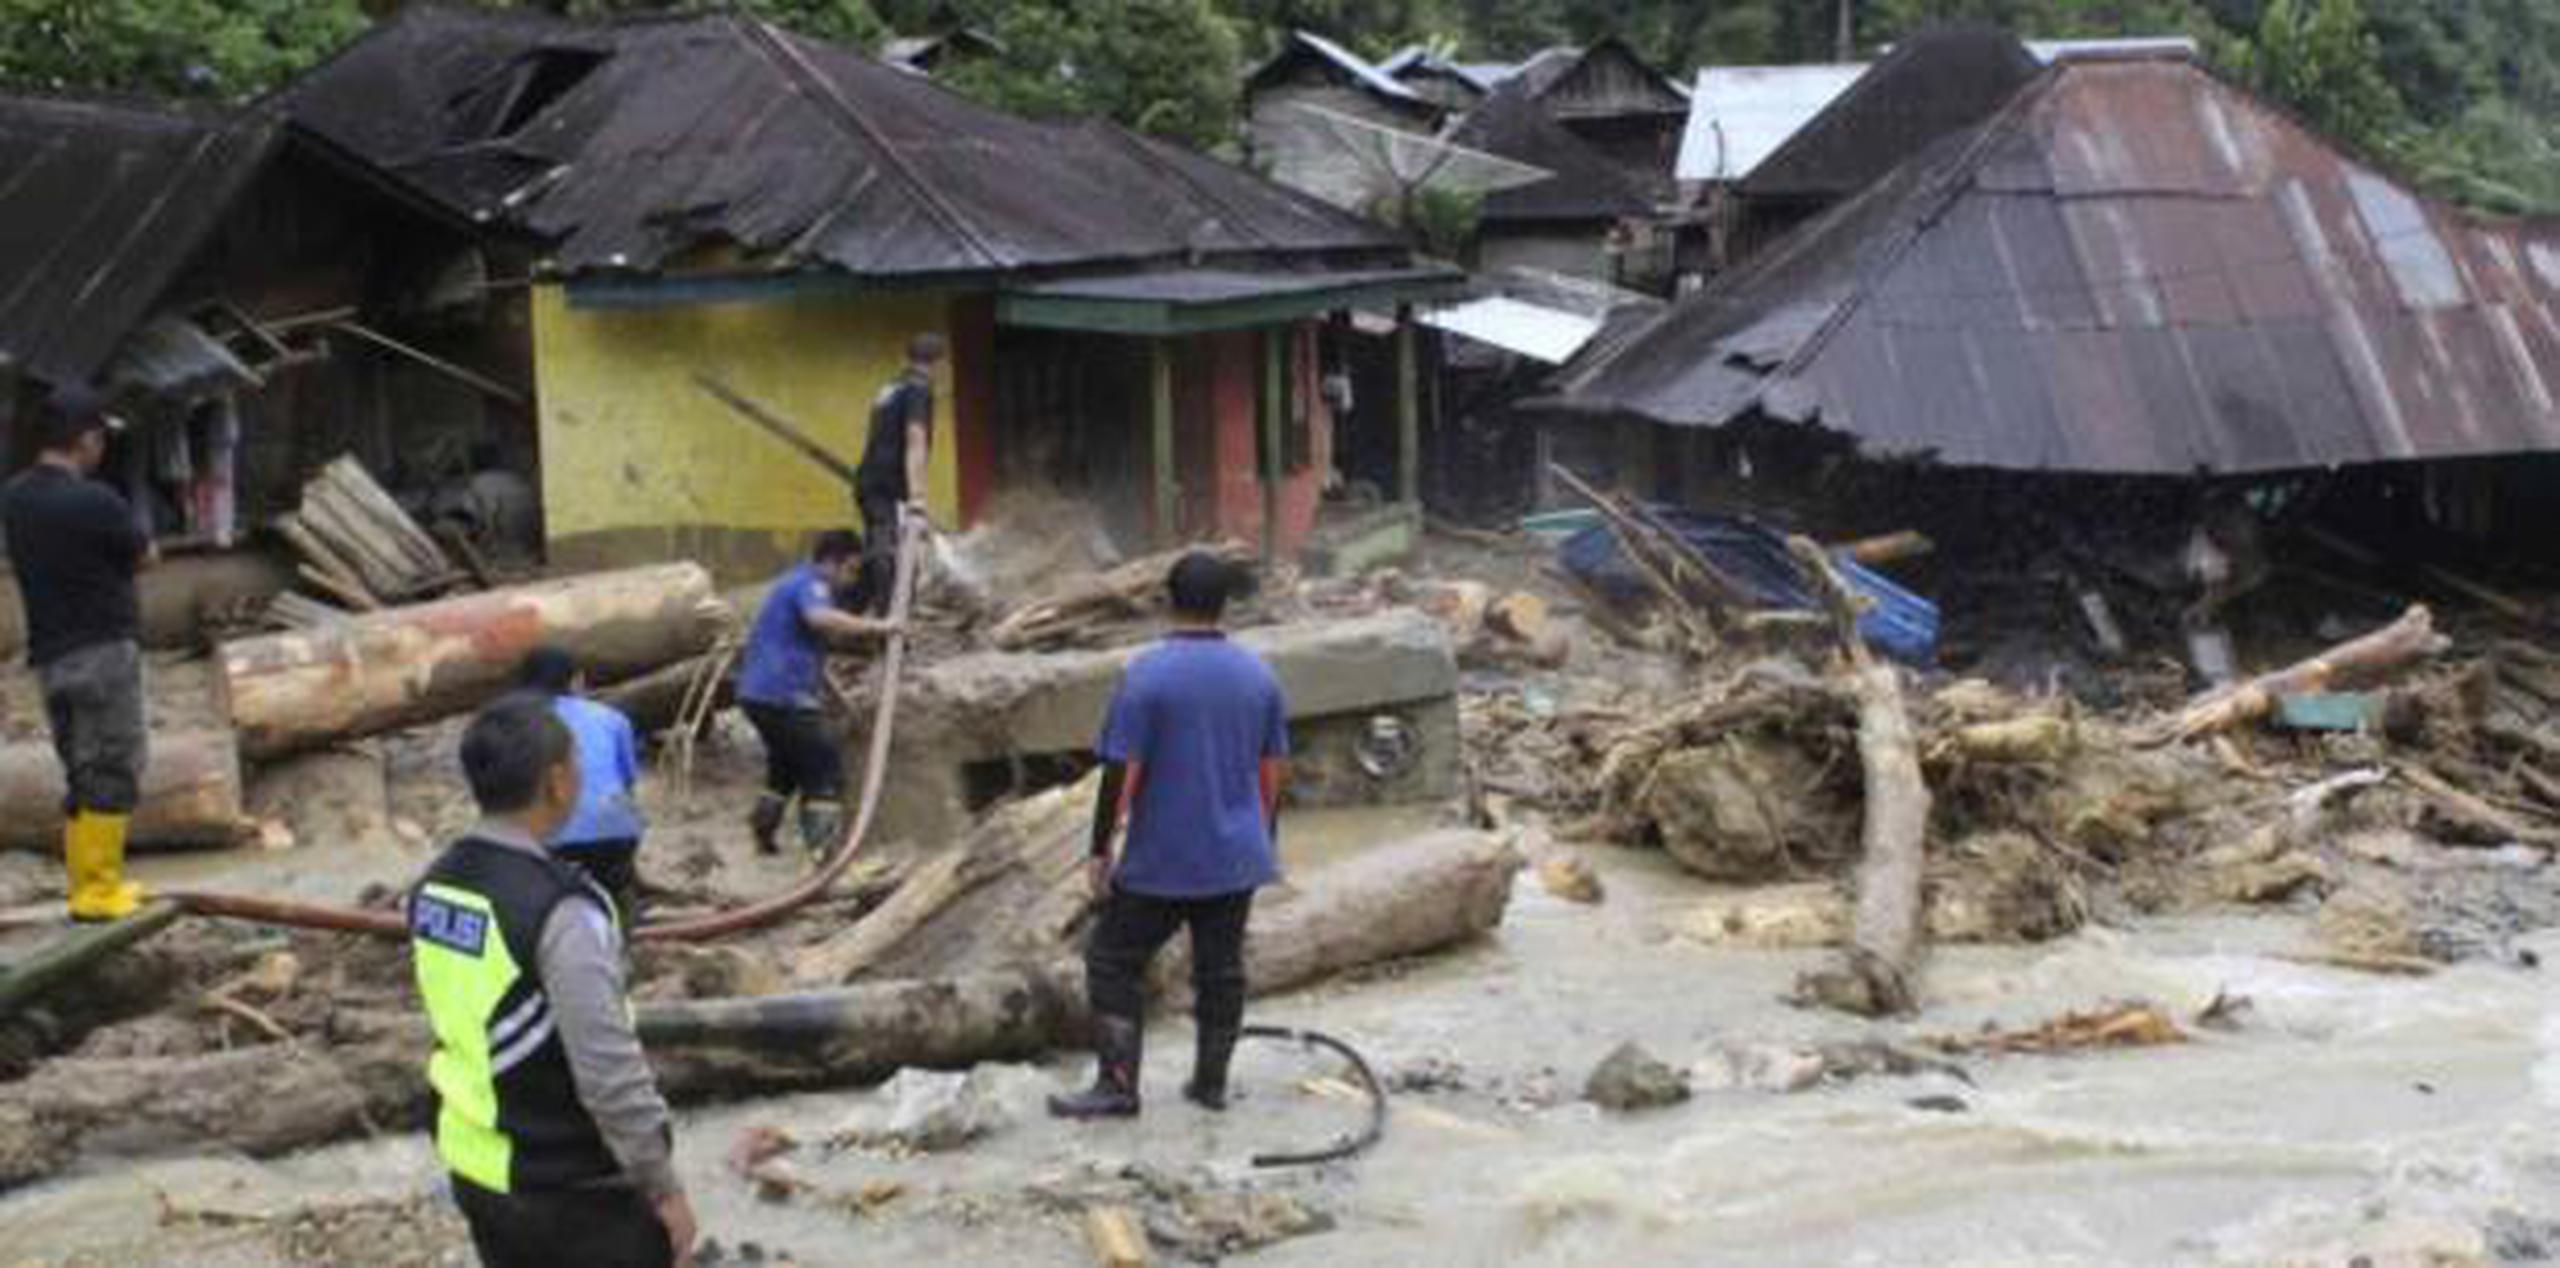 Las lluvias causan frecuentes deslaves e inundaciones repentinas en Indonesia, donde millones de personas viven en zonas montañosas o cerca de llanuras anegables.  (AP)